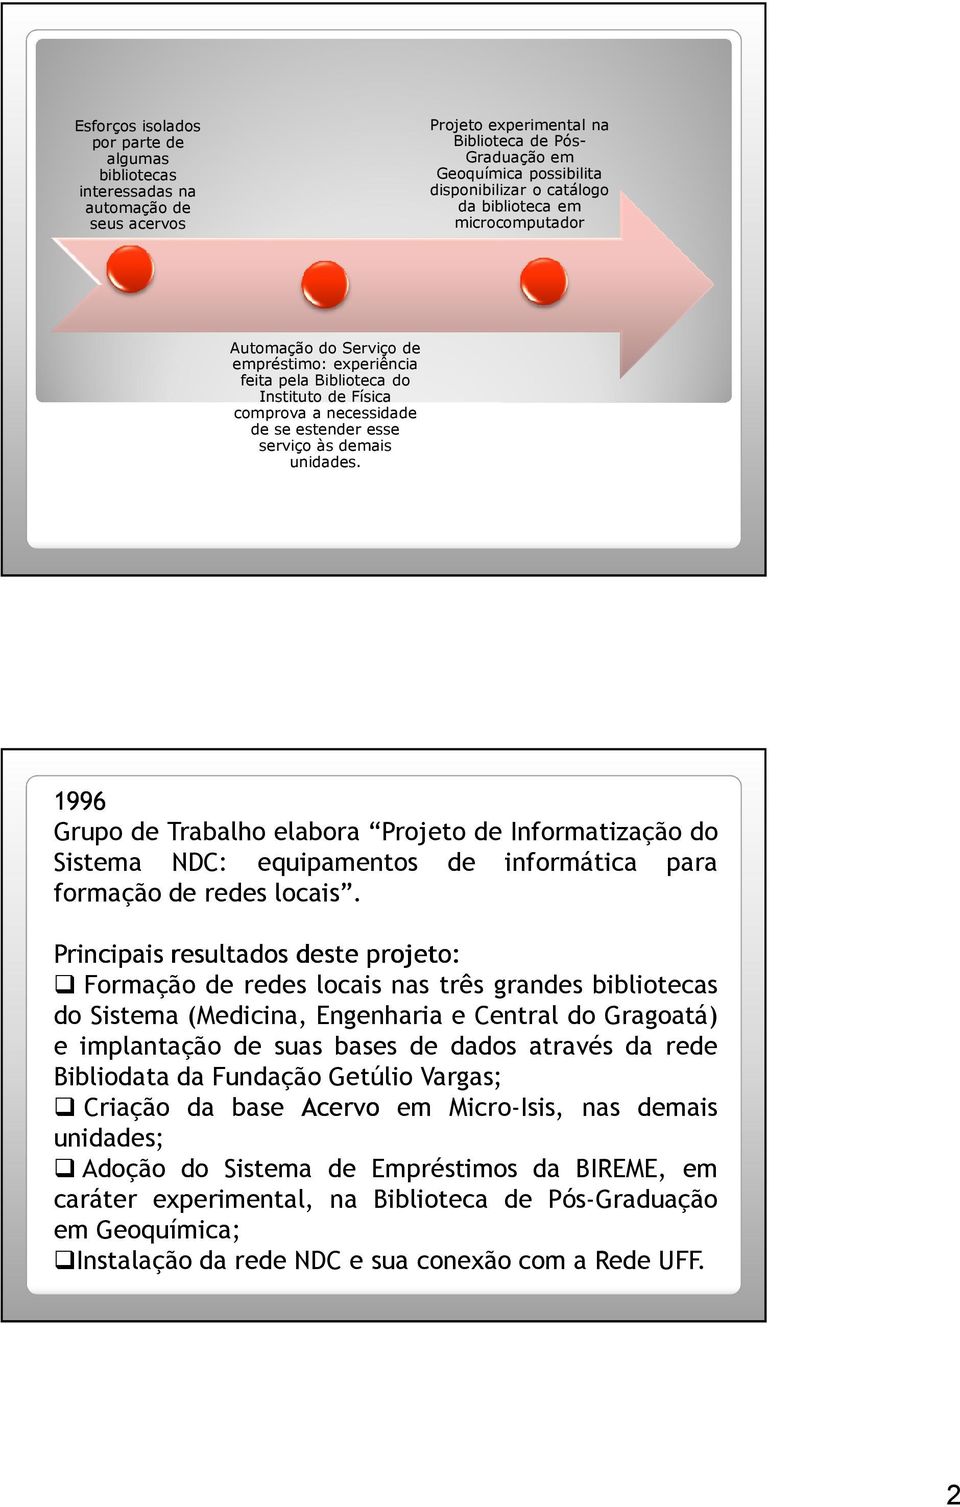 1996 Grupo de Trabalho elabora Projeto de Informatização do Sistema NDC: equipamentos de informática para formação de redes locais.